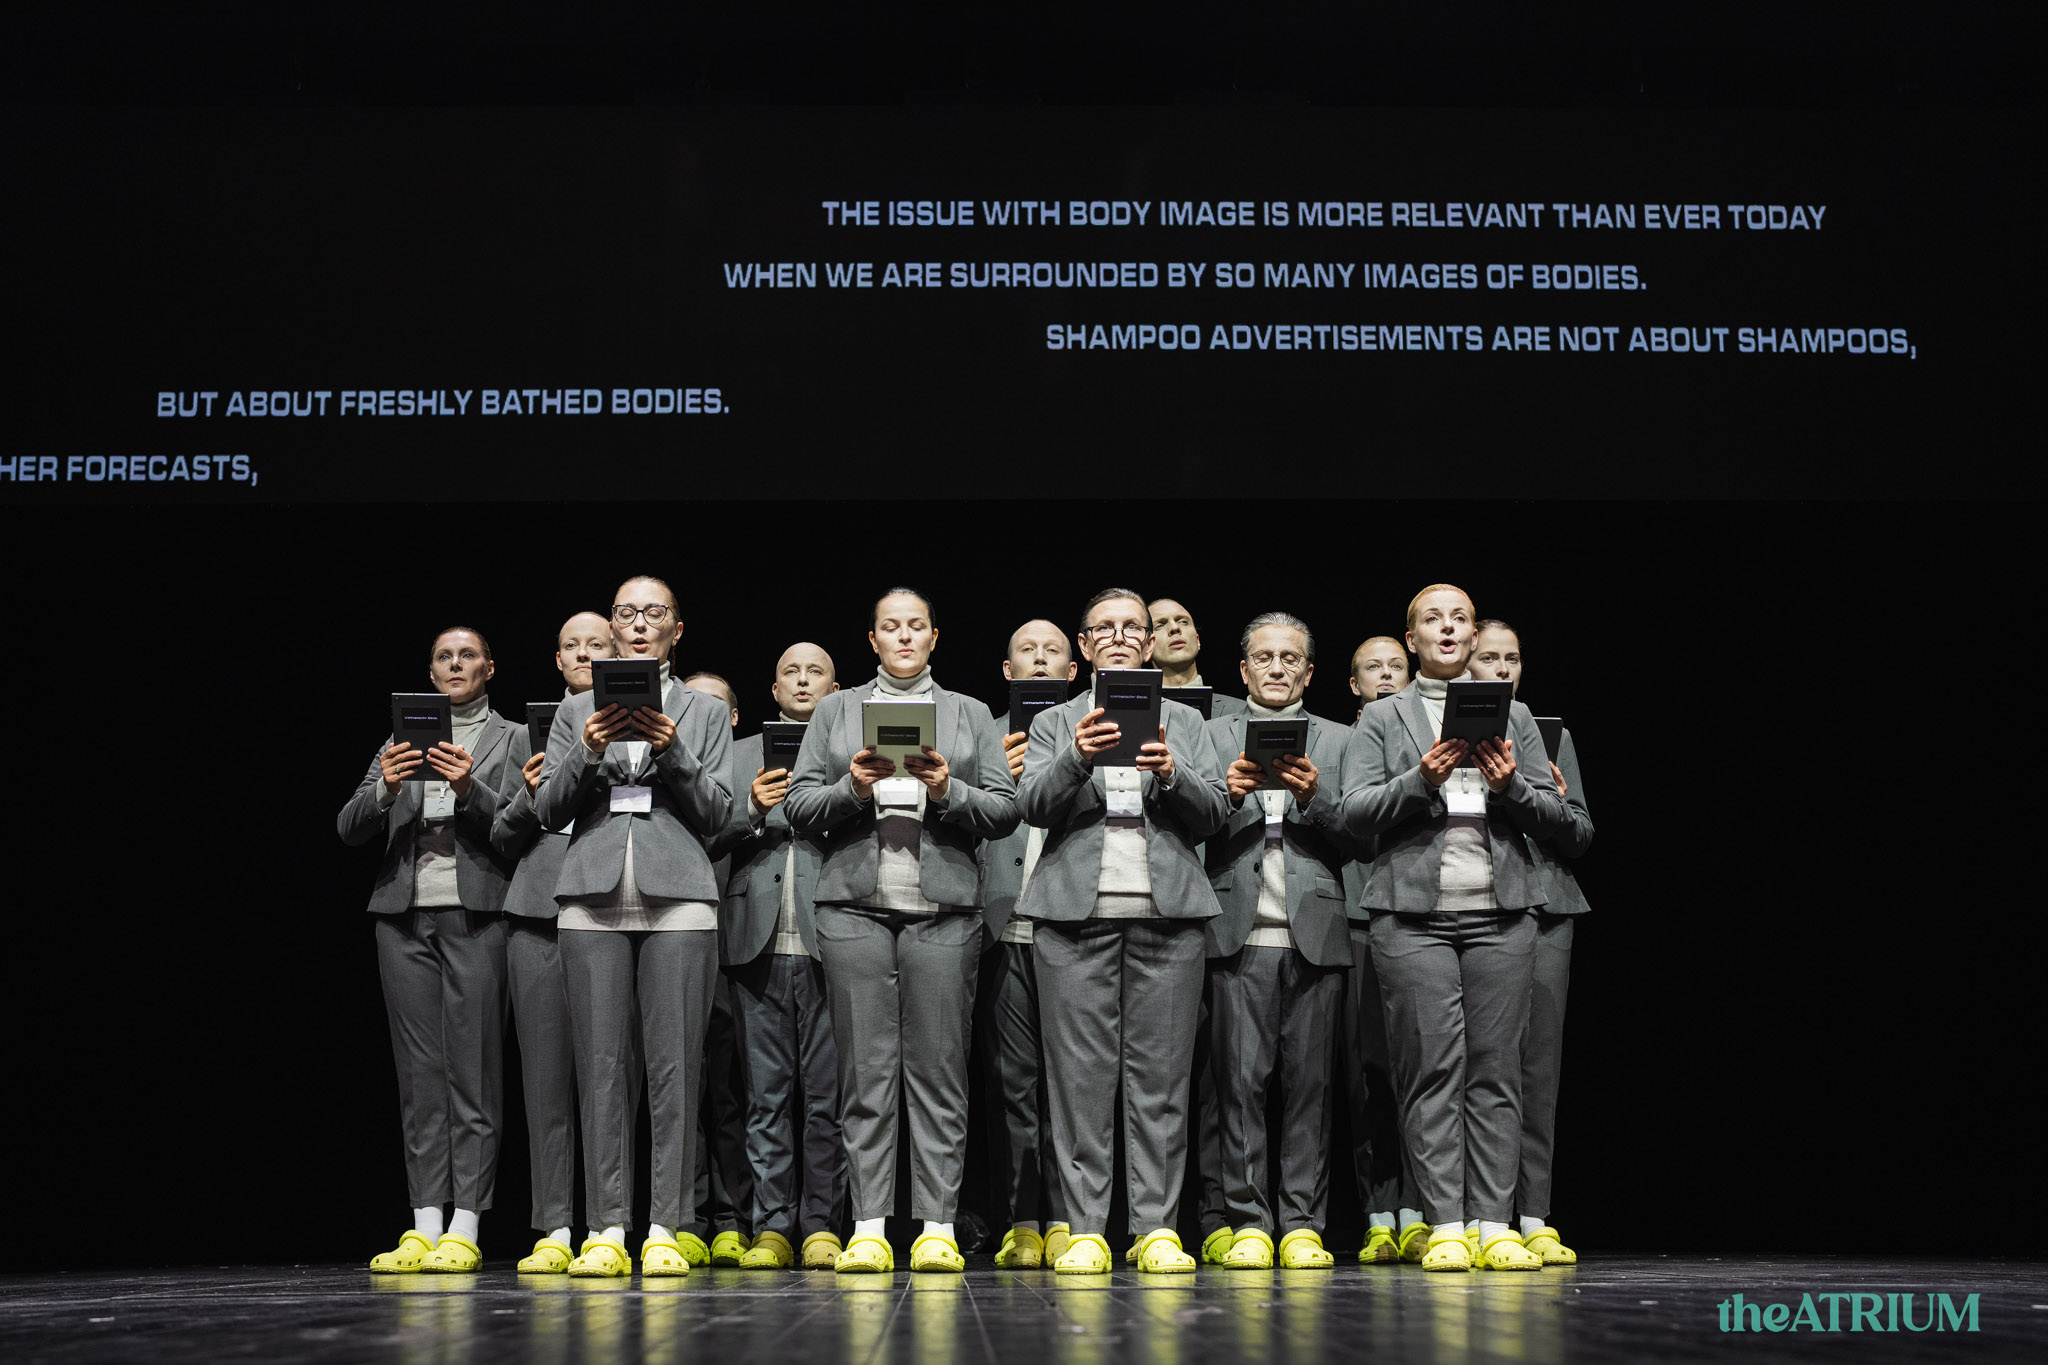 Skats no teātra kompānijas "Operomanija" izrādes “Drosmīgais jaunais ķermenis” (aut. A. Bumšteins, Ž. Kudirka) // Foto – Domas Rimeika